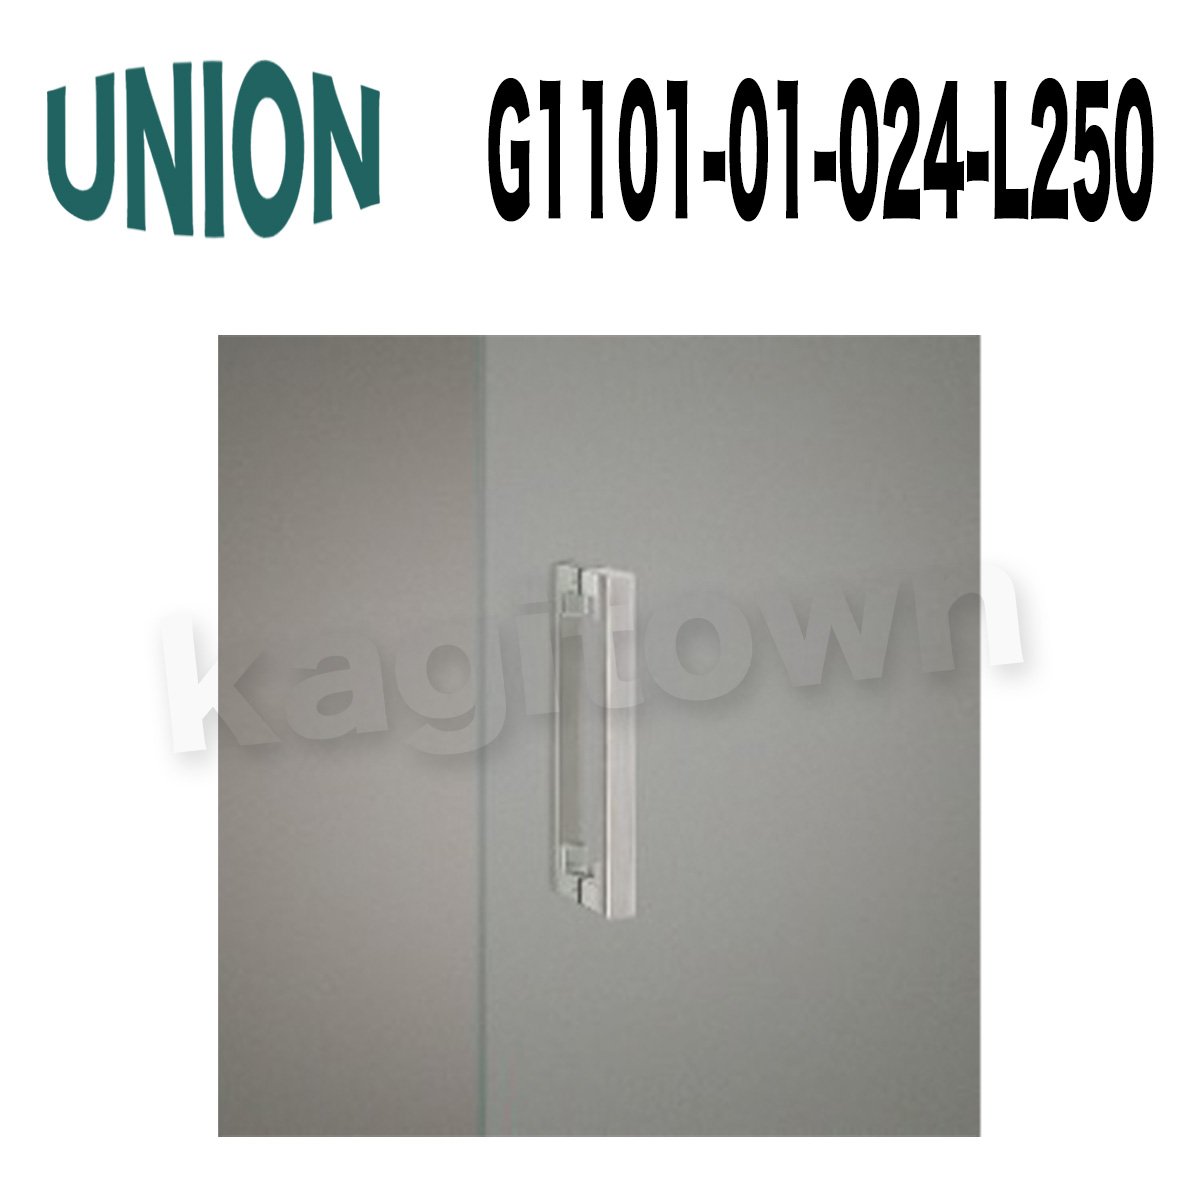 UNION【ユニオン】G1101-01-024-L250[ドアハンドル]押し棒（内外